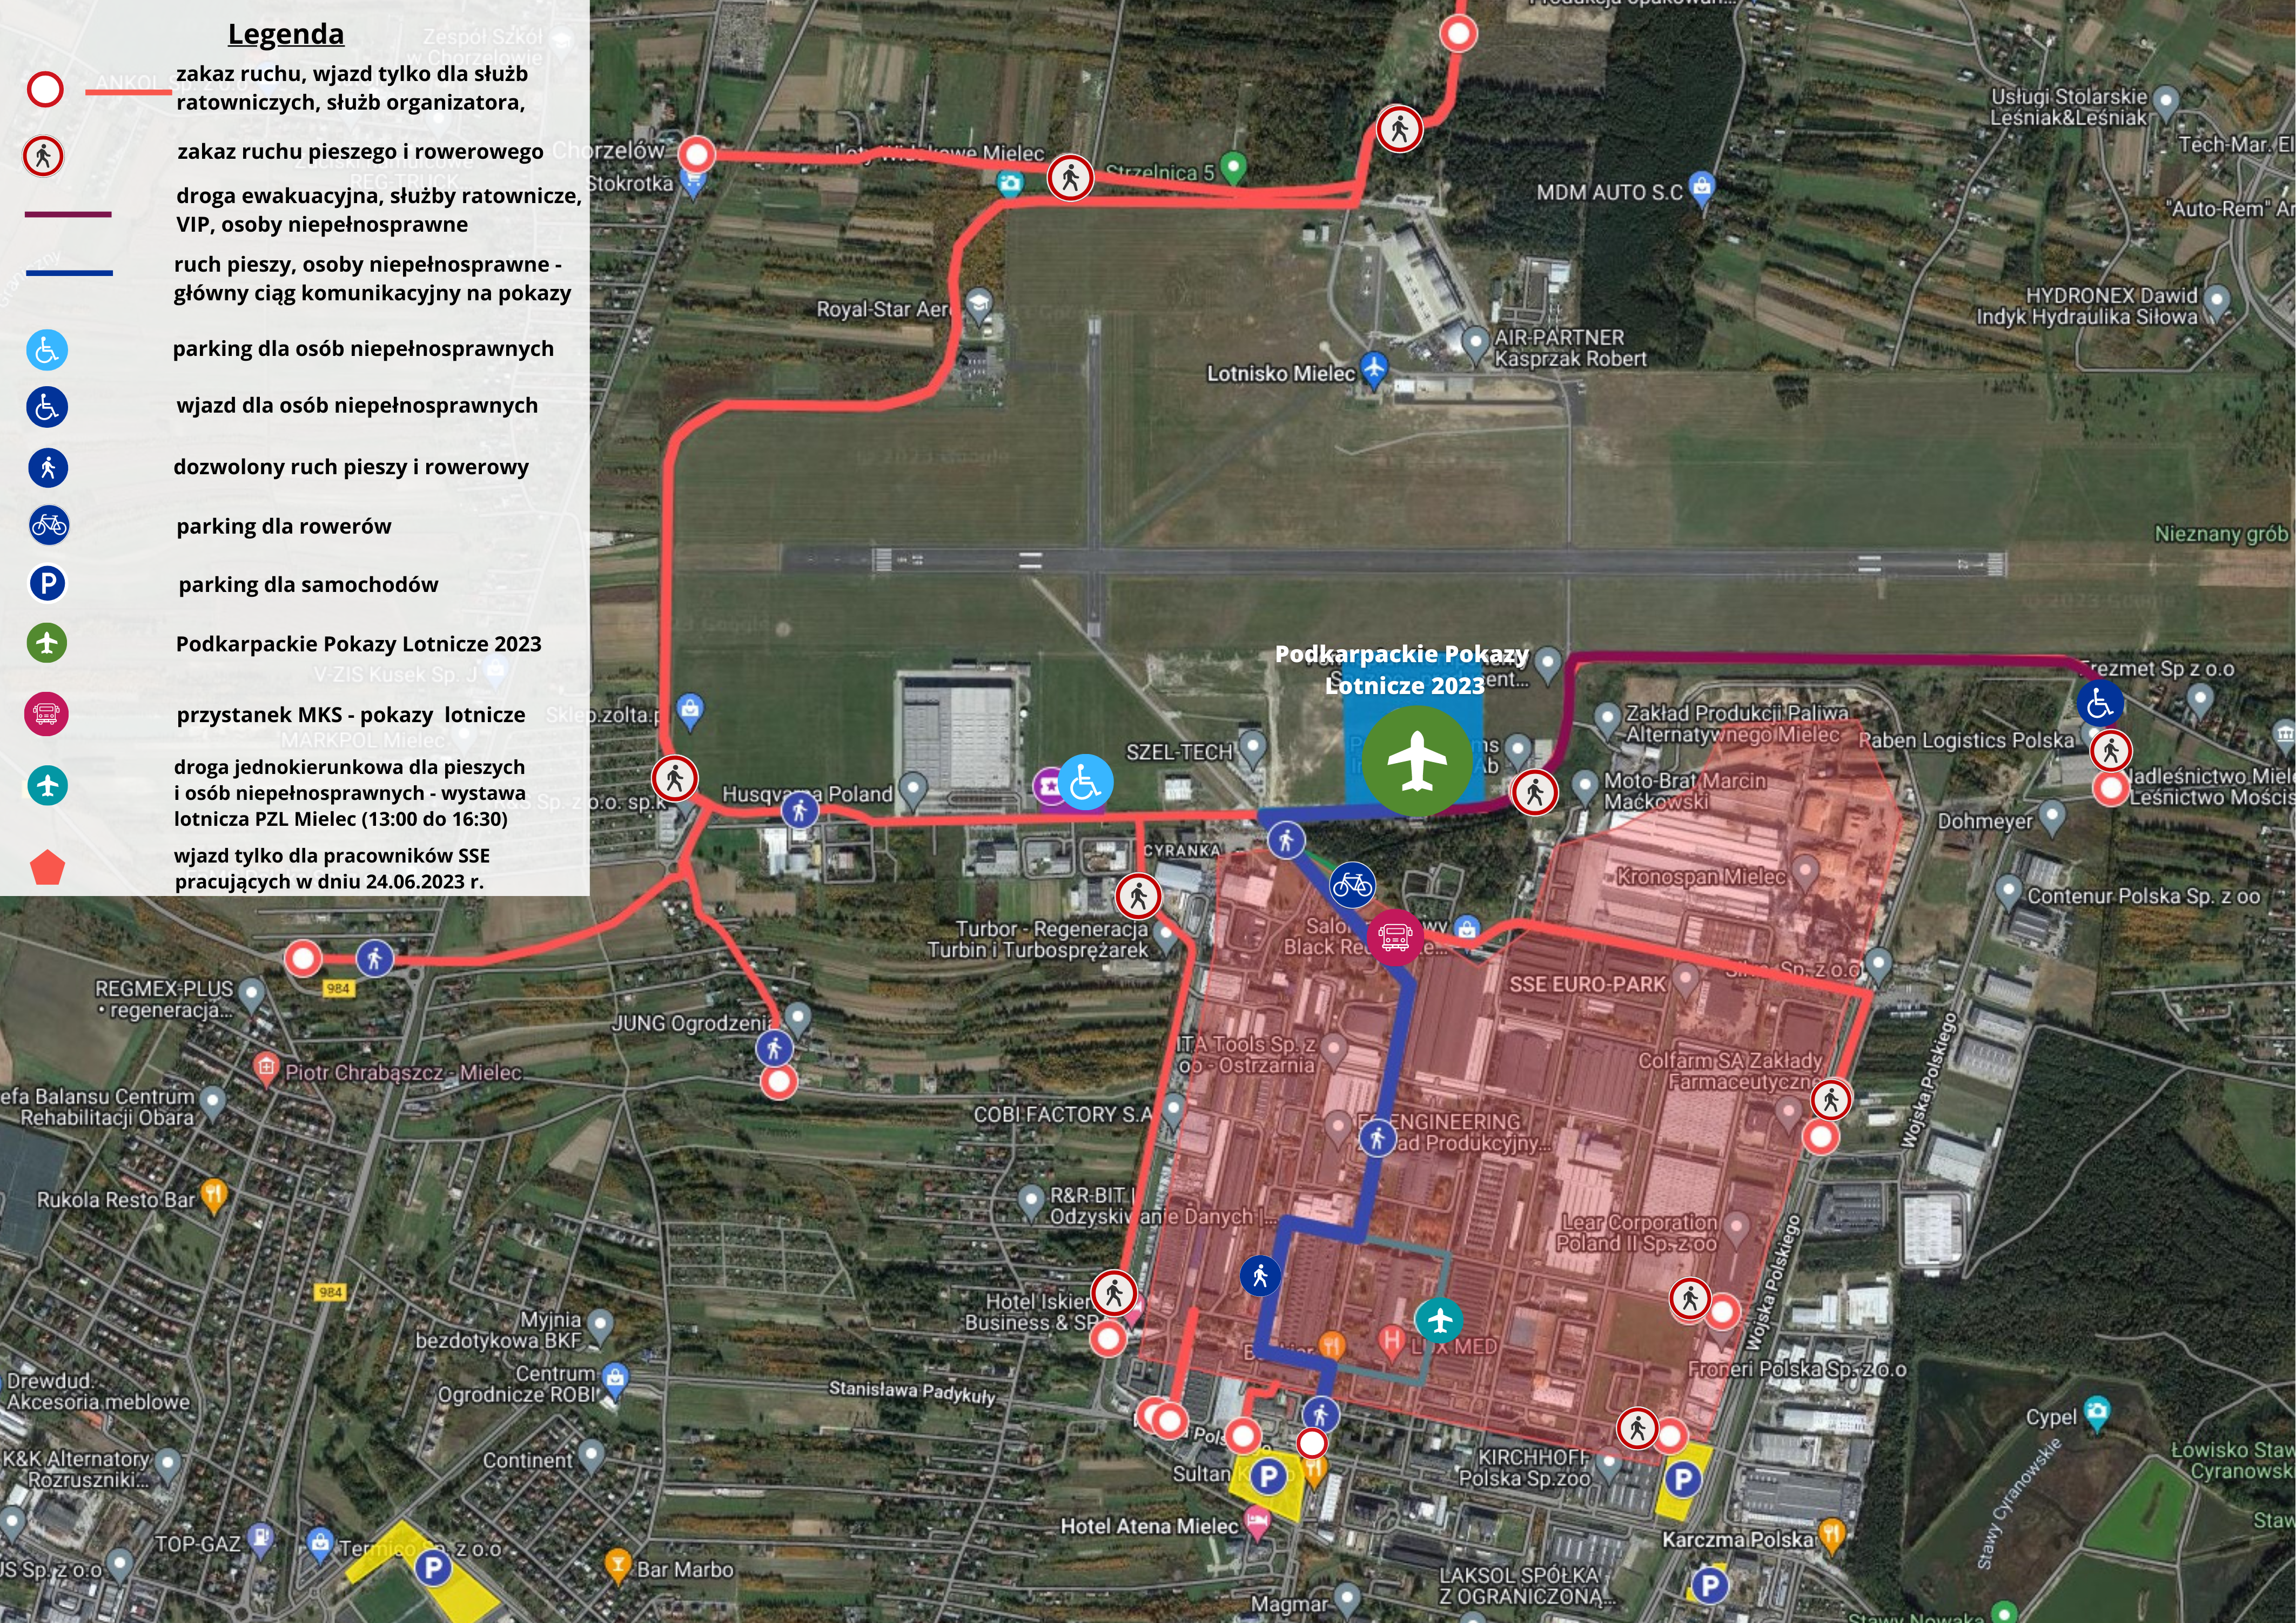 Mapa satelitarna z zaznaczoną organizacją ruchu oraz parkingami podczas IV Podkarpackich Pokazów Lotniczych. Szczegóły opisane w artykule.